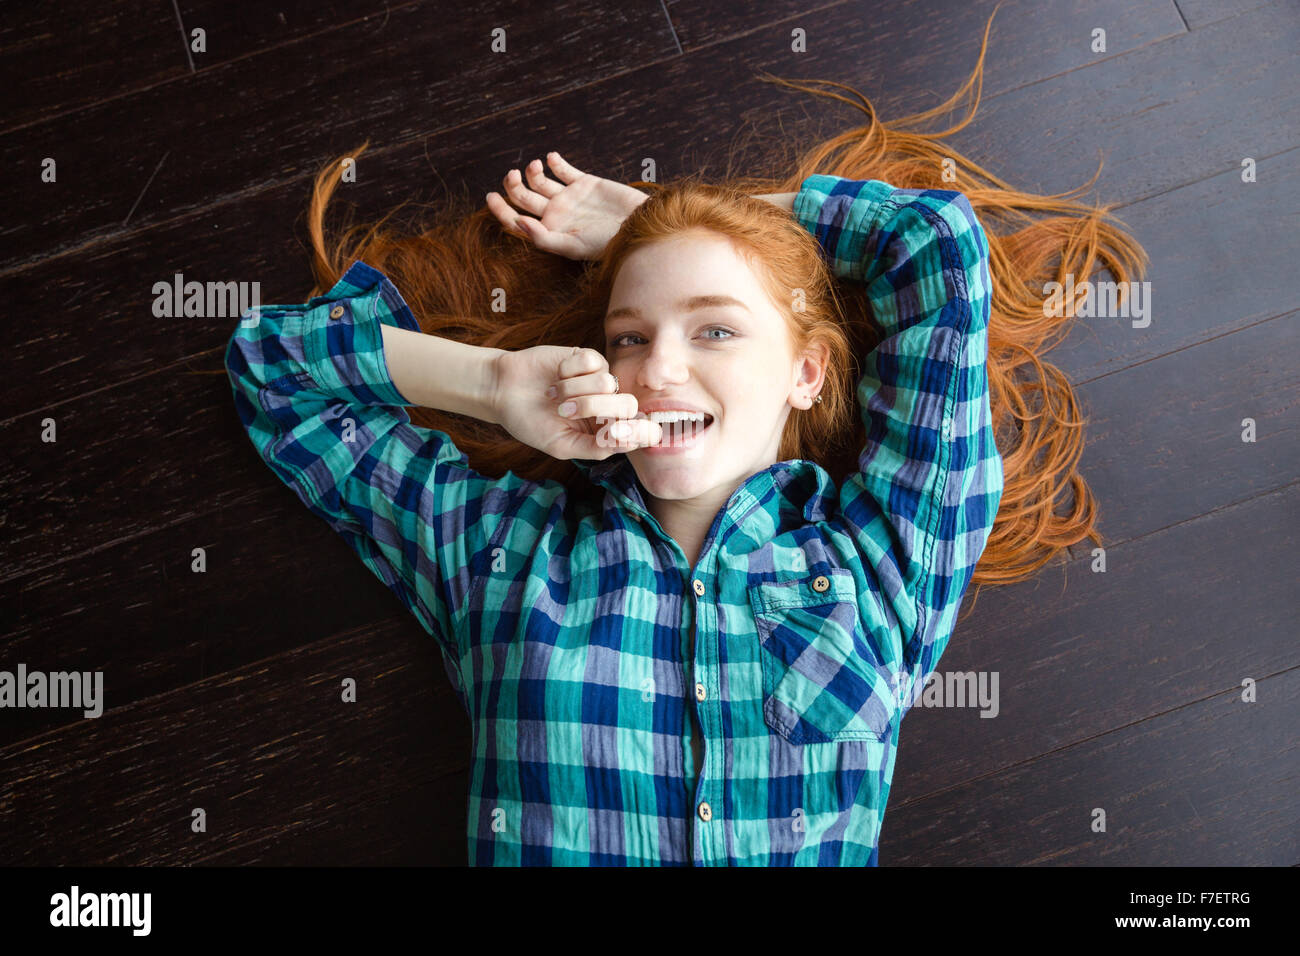 Vista superiore della gioiosa attraente redhead girl in plaid shirt sdraiato sul pavimento in legno Foto Stock